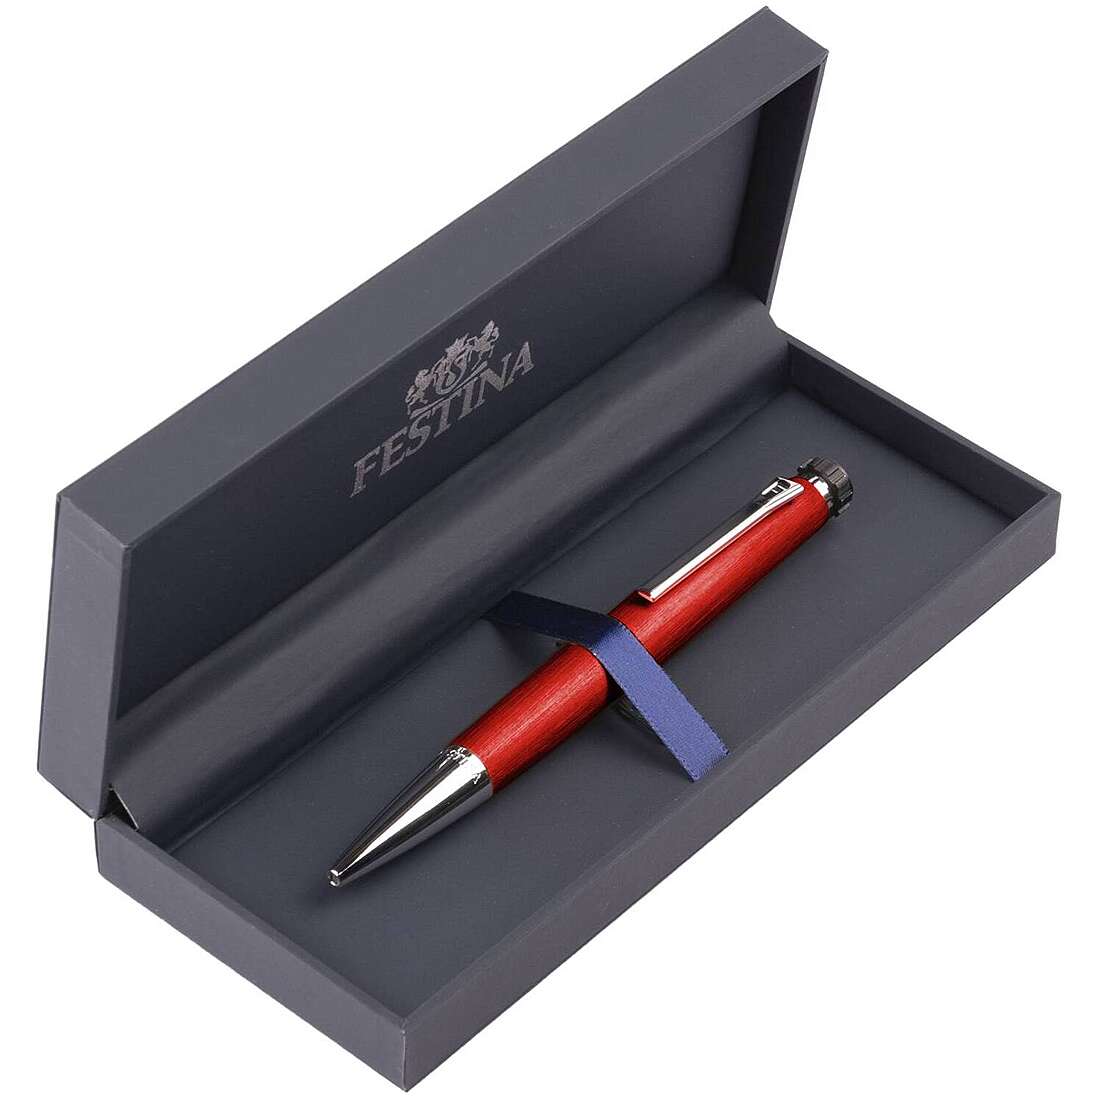 Customized pen with ballpoint by Festina Chrono Bike FWS4104/P